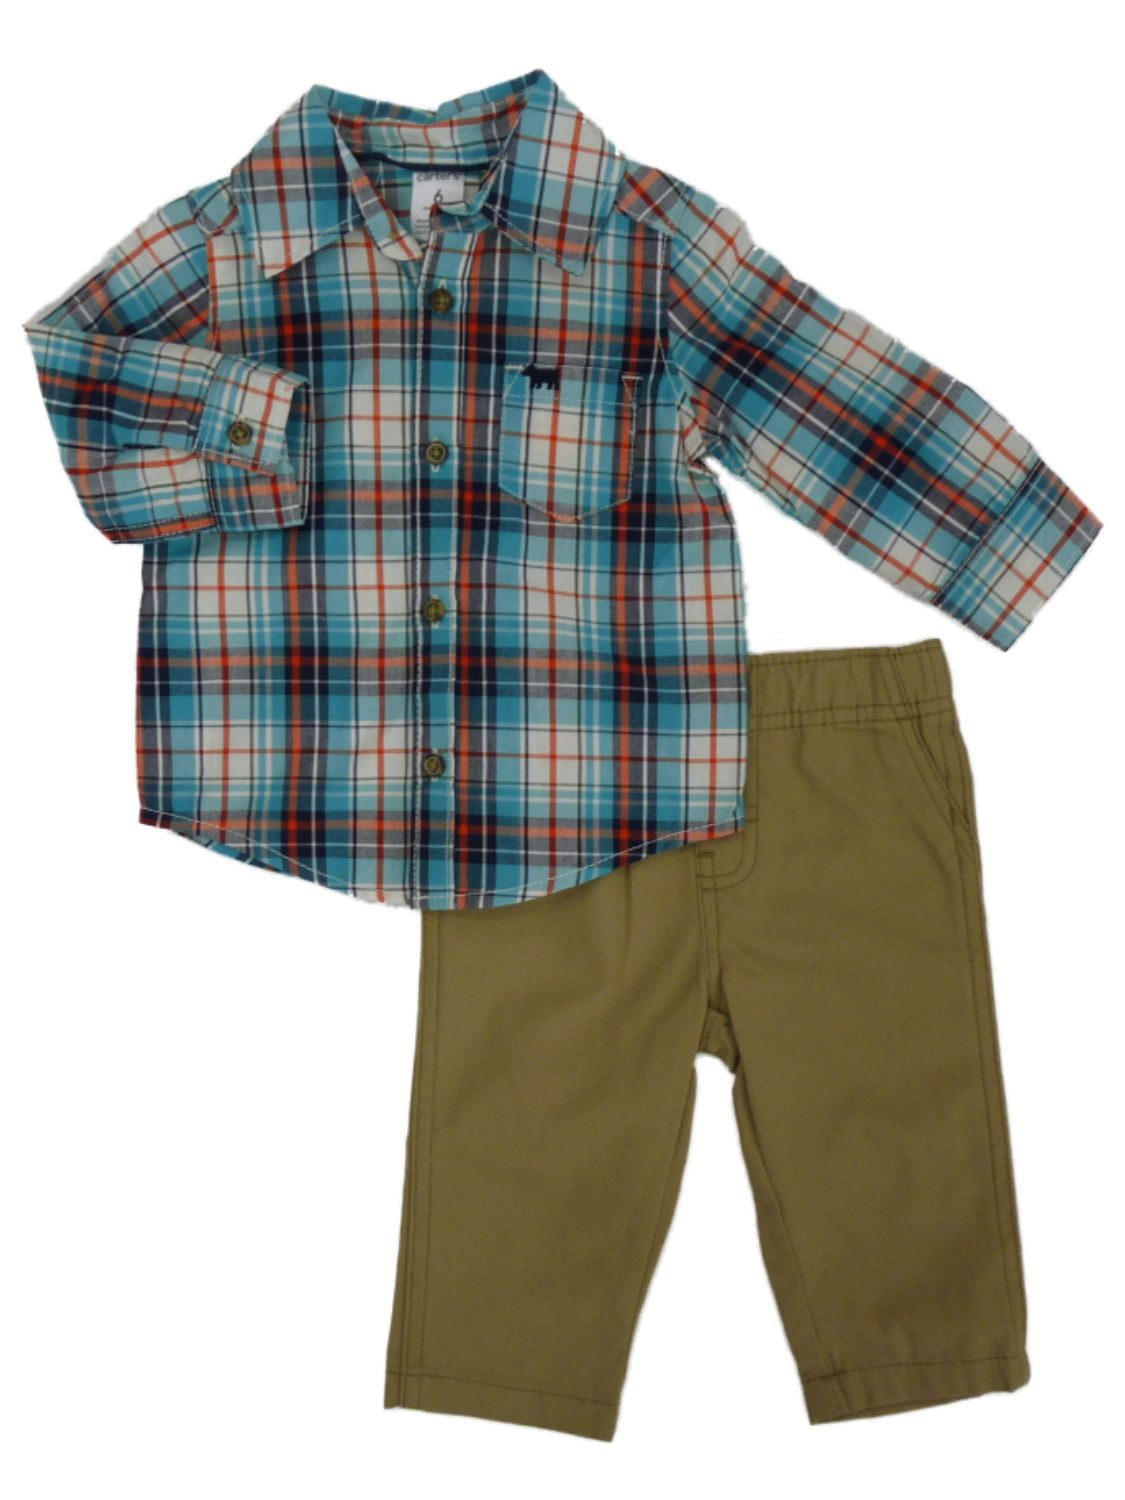 Carters Infant Boys 2-Piece Blue Plaid Shirt & Khaki Pants Set 9m -  Walmart.com